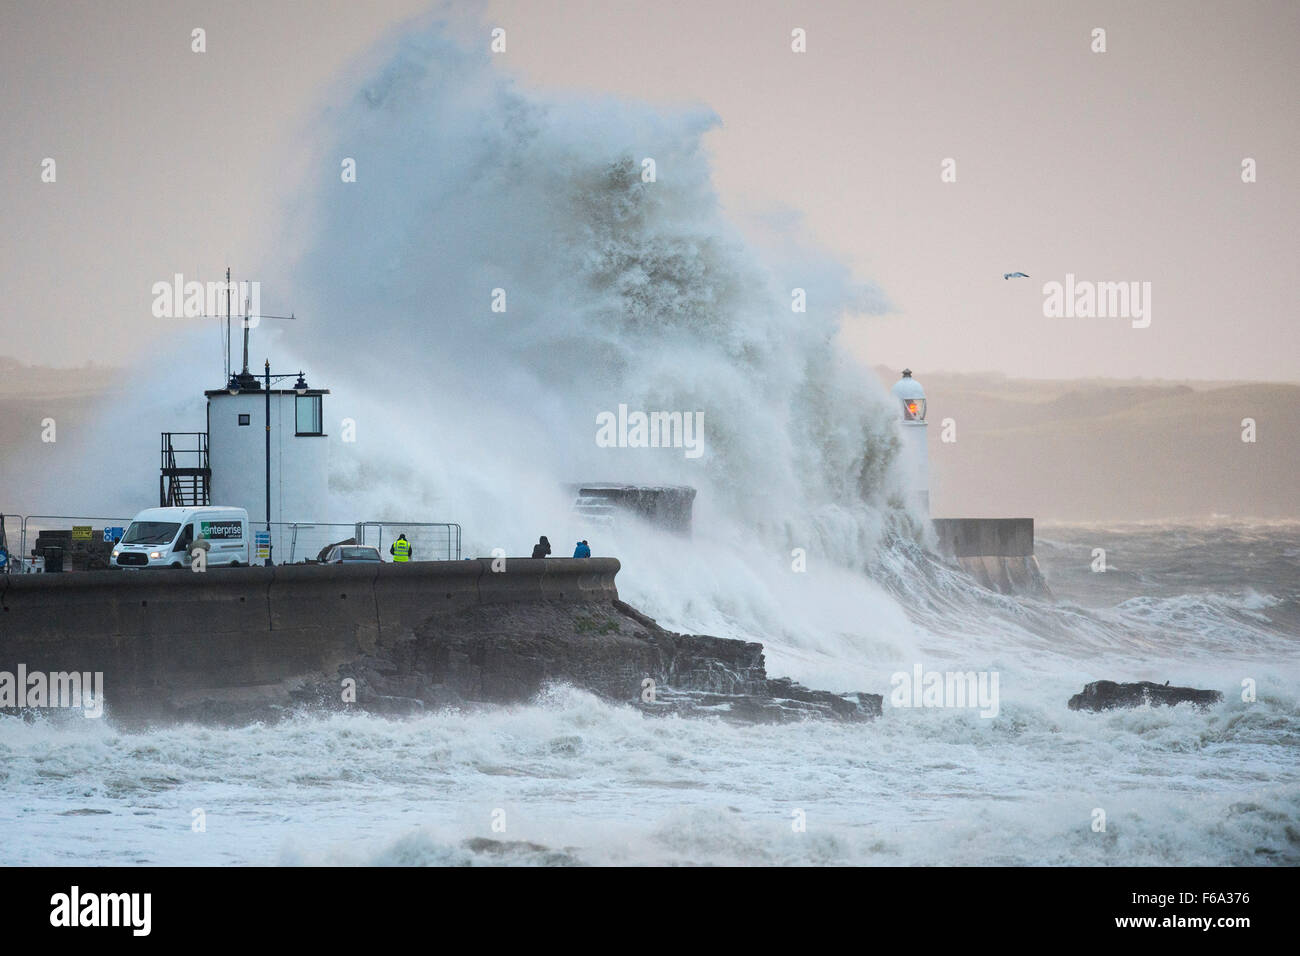 Des vents violents provoquent d'énormes vagues crash sur le phare à bord de Porthcawl, Galles du Sud, comme Barney tempête arrive. Banque D'Images